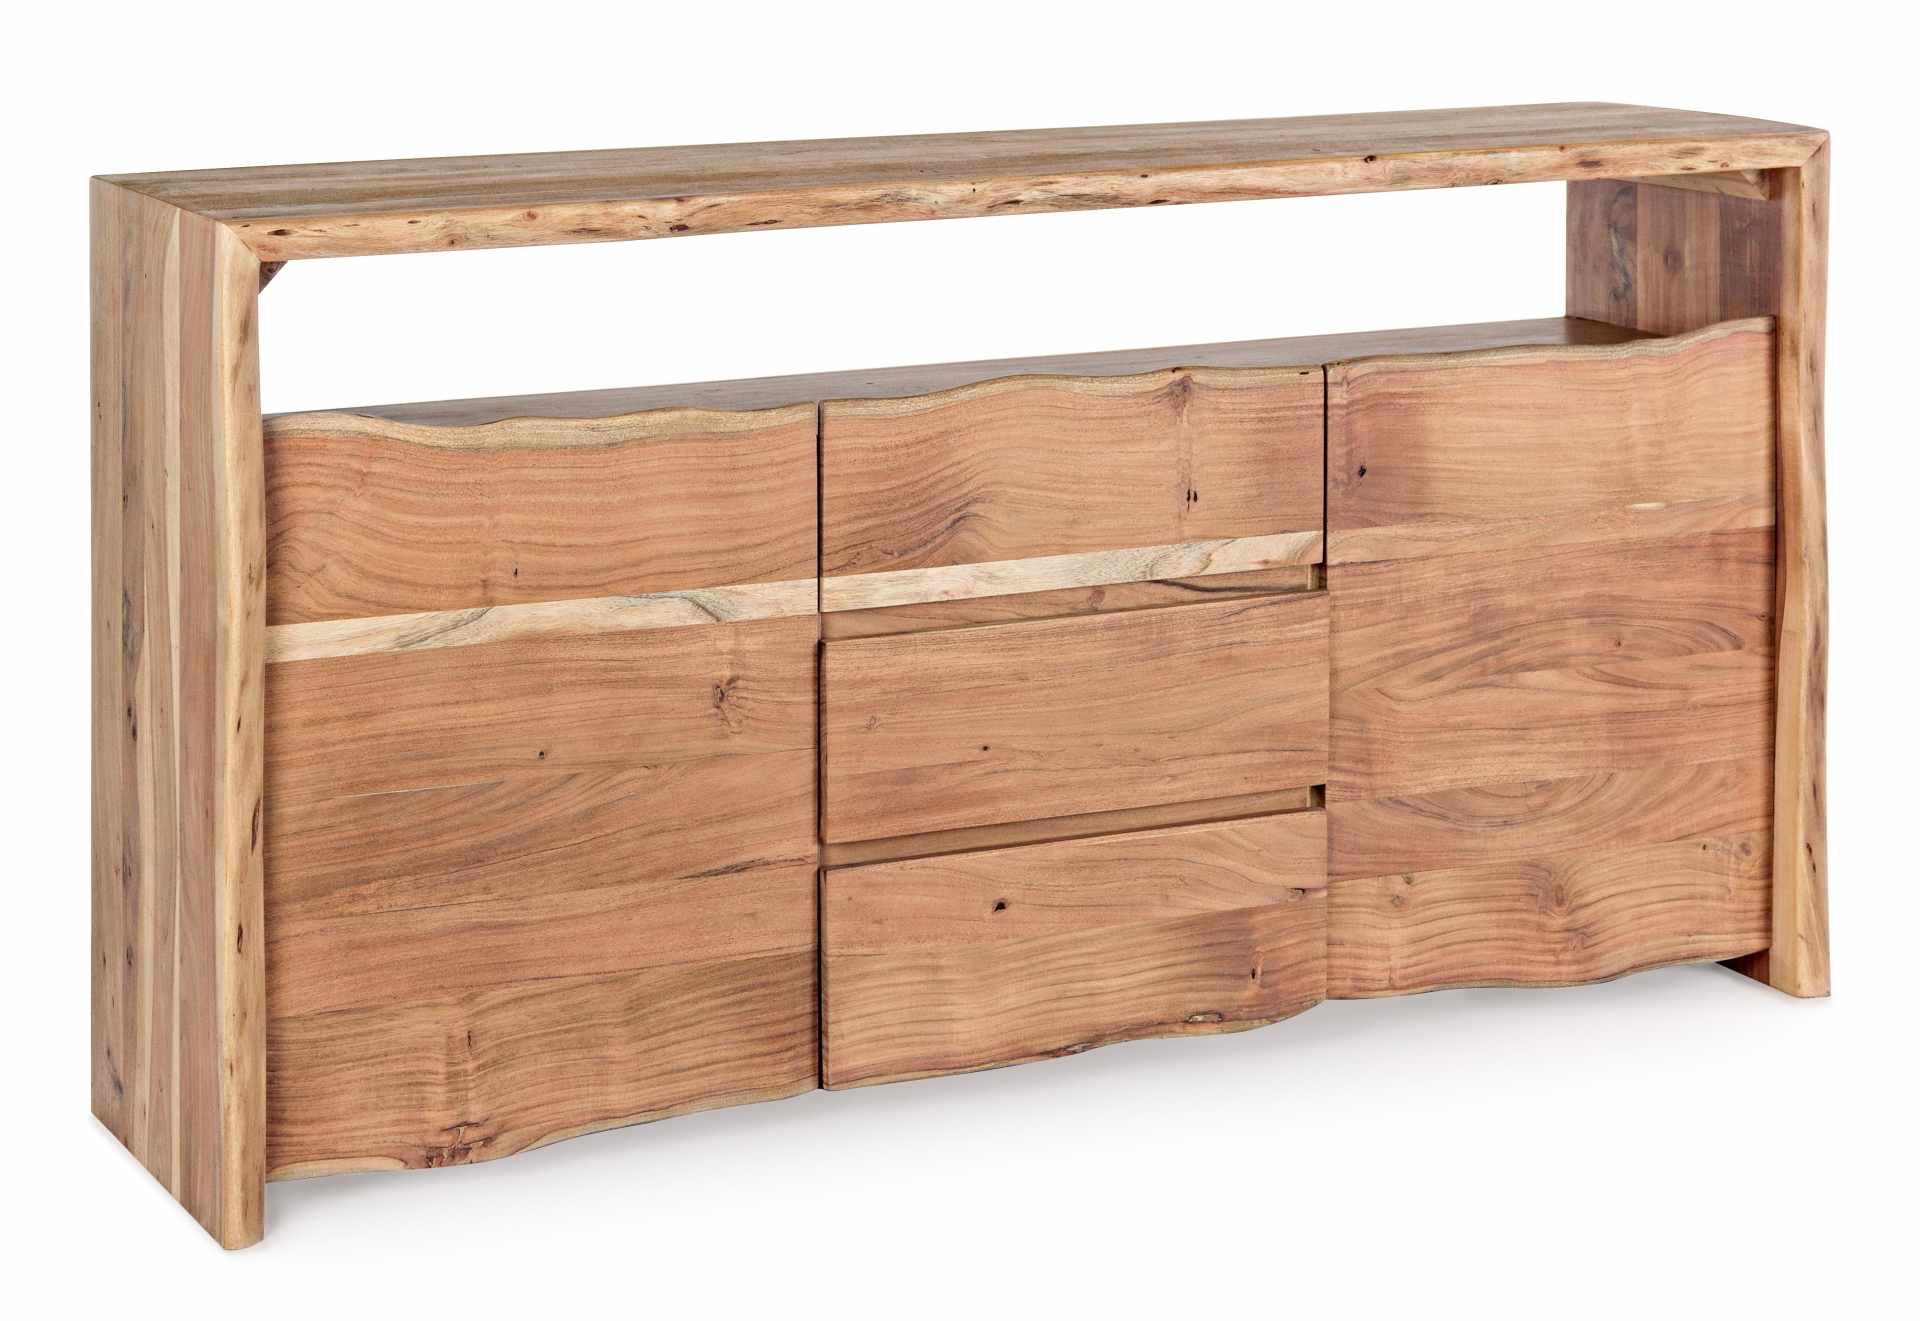 Das Sideboard Eneas überzeugt mit seinem klassischen Design. Gefertigt wurde es aus Akazien-Holz, welches einen natürlichen Farbton besitzt. Das Gestell ist auch aus Akazien-Holz. Das Sideboard verfügt über zwei Türen und drei Schubladen. Die Breite beträ